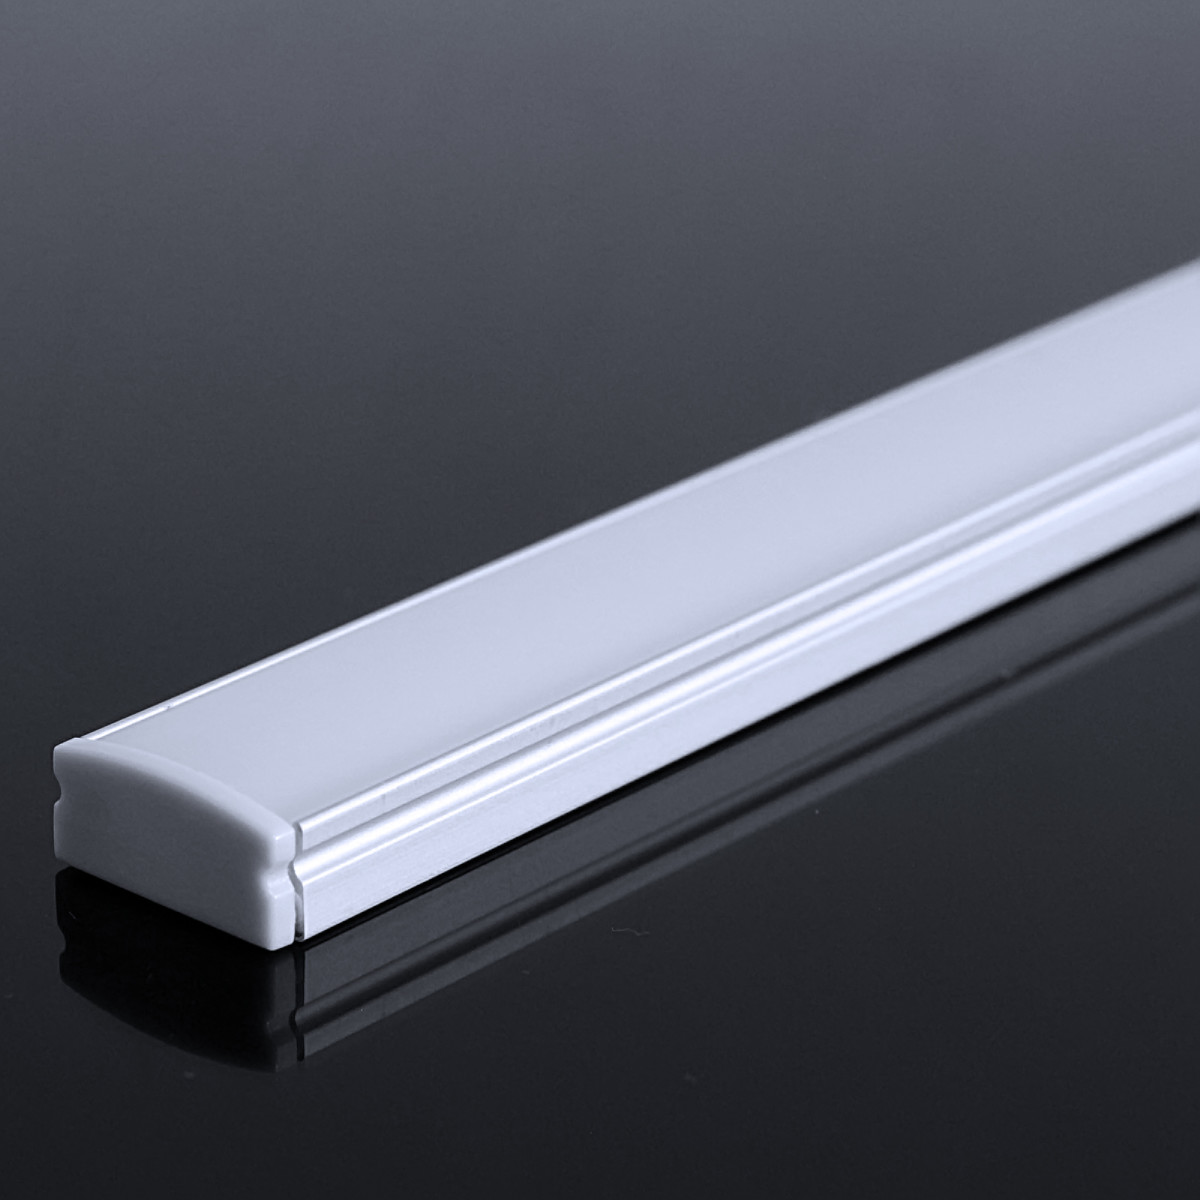 LED Flachprofil "Slim-Line" | Abdeckung diffus | Zuschnitt auf 82cm |